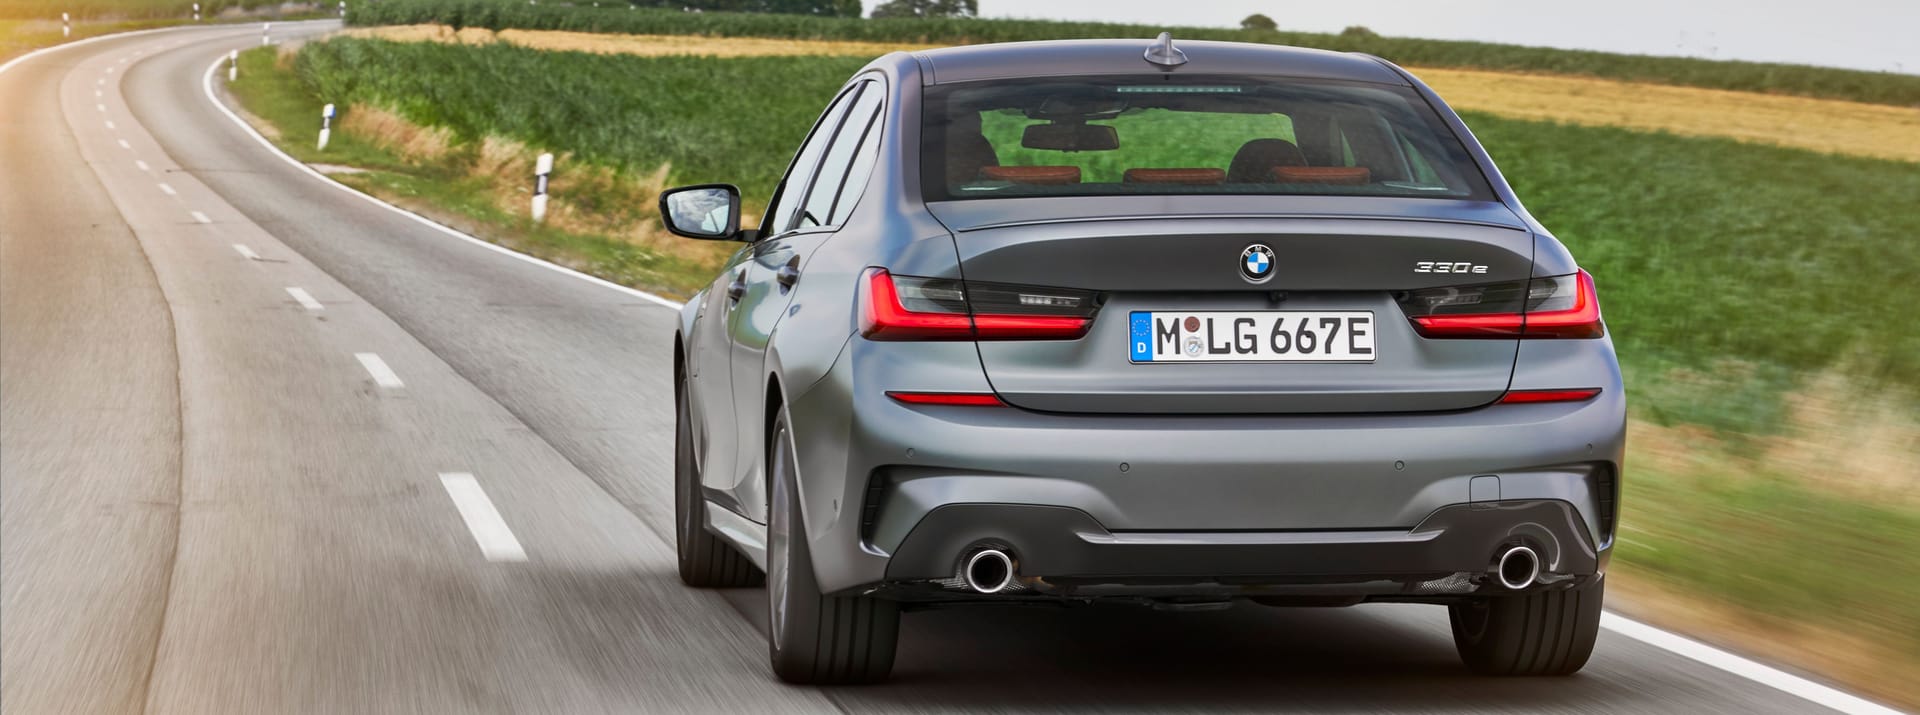 Leicht im Minus: Im August 2022 ging der BMW-Absatz gegenüber dem Vorjahresmonat ein wenig zurück.